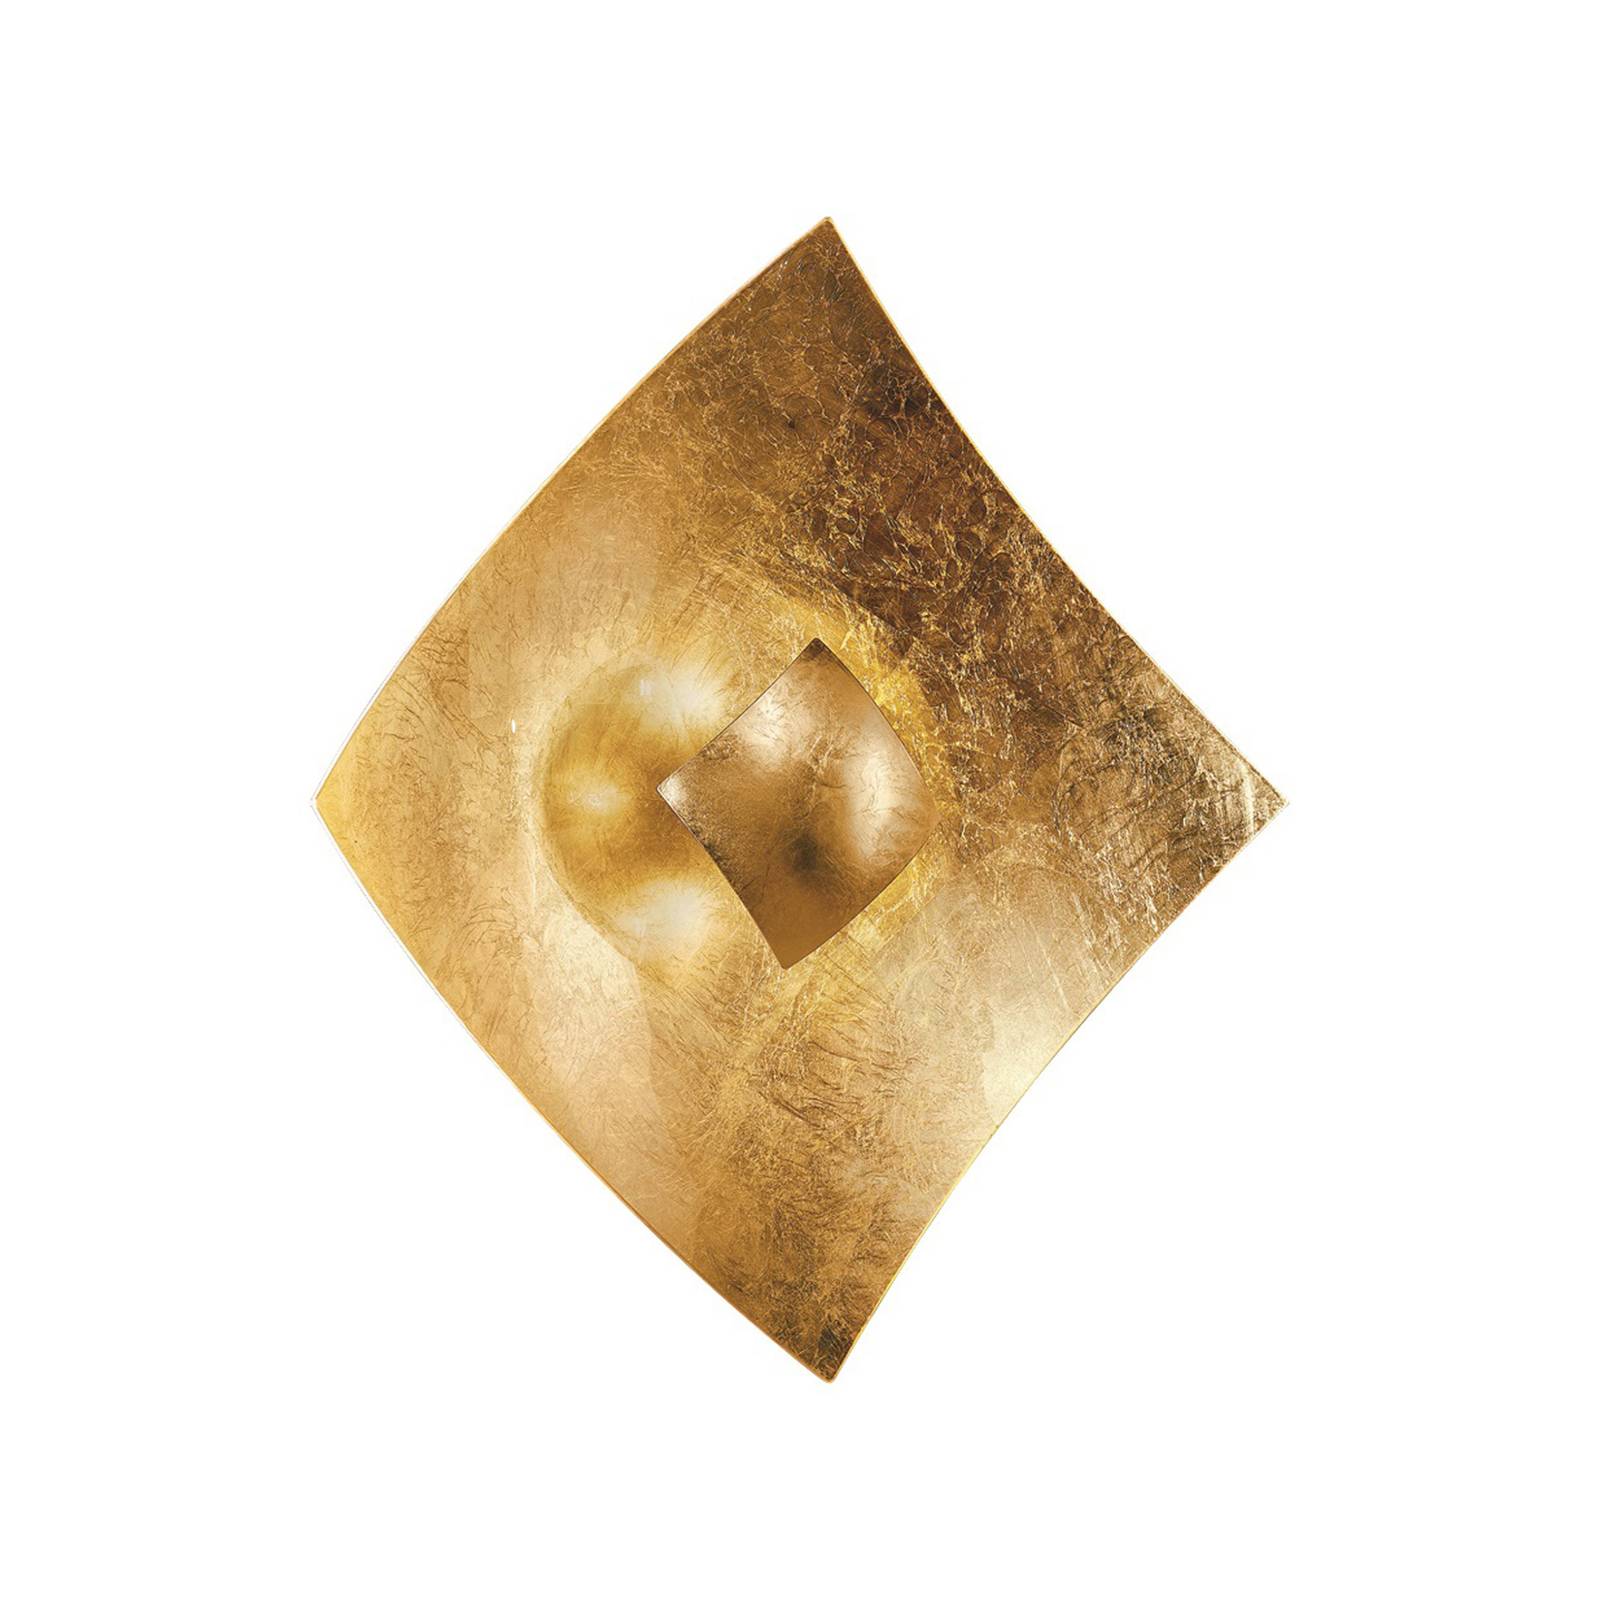 Kögl Wandleuchte Quadrangolo mit Blattgold, 50 x 50 cm